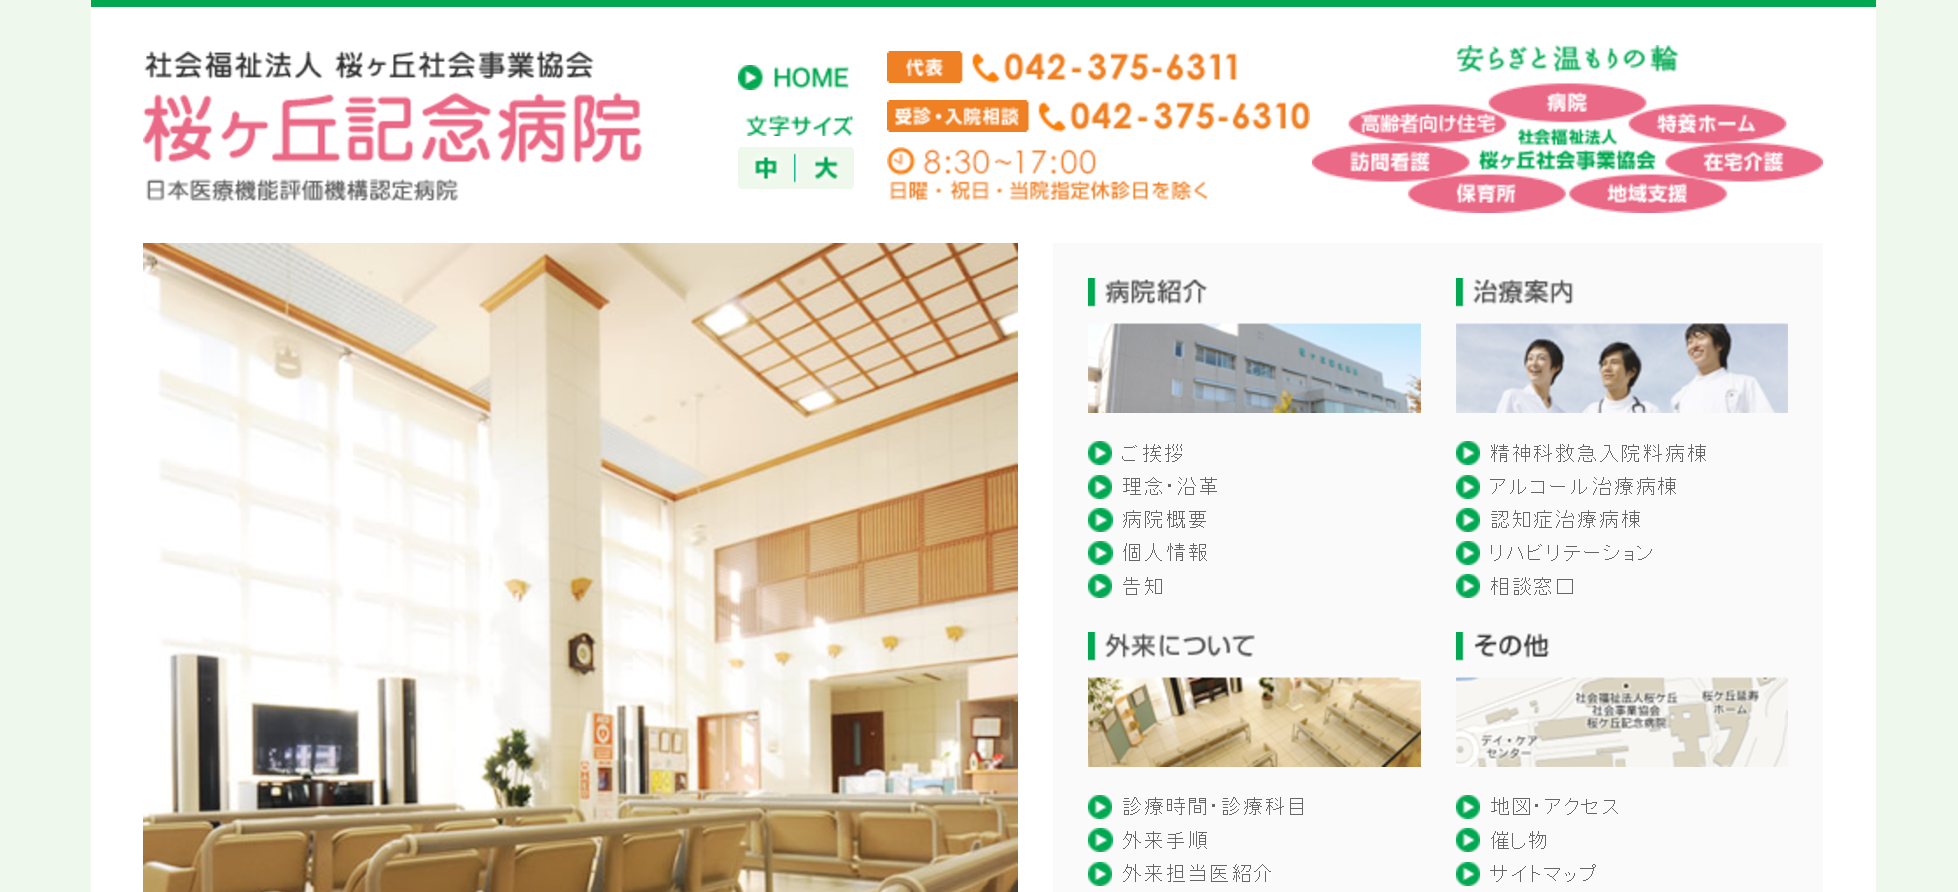 桜ヶ丘記念病院のホームページ